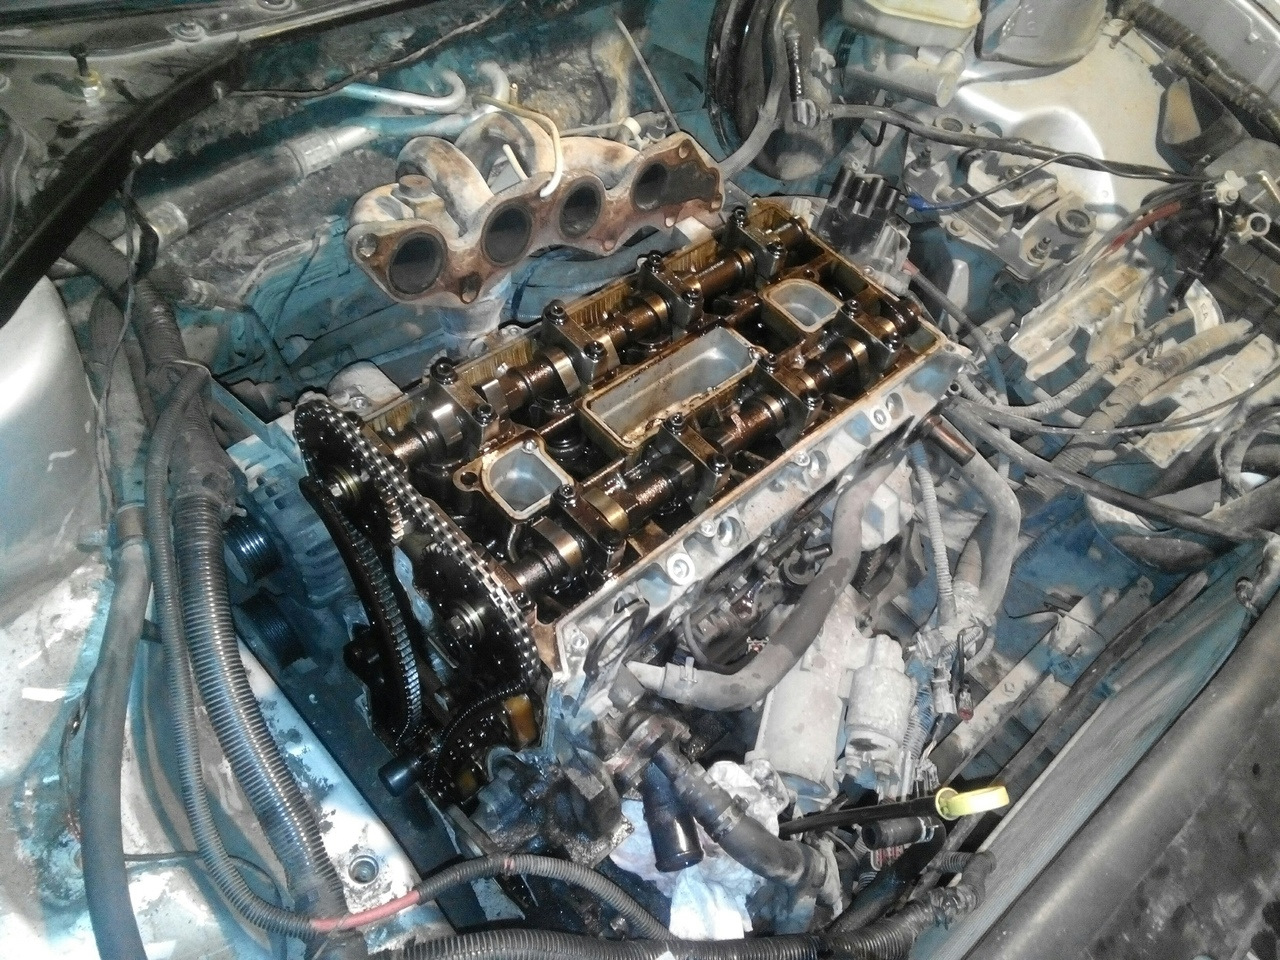 Ремонт двигателей ford. Duratec he 2.0 блок цилиндров. Duratec he 2.0 2 цепи. Двигатель VCT 2.0. Распредвалы Duratec he 2.0.